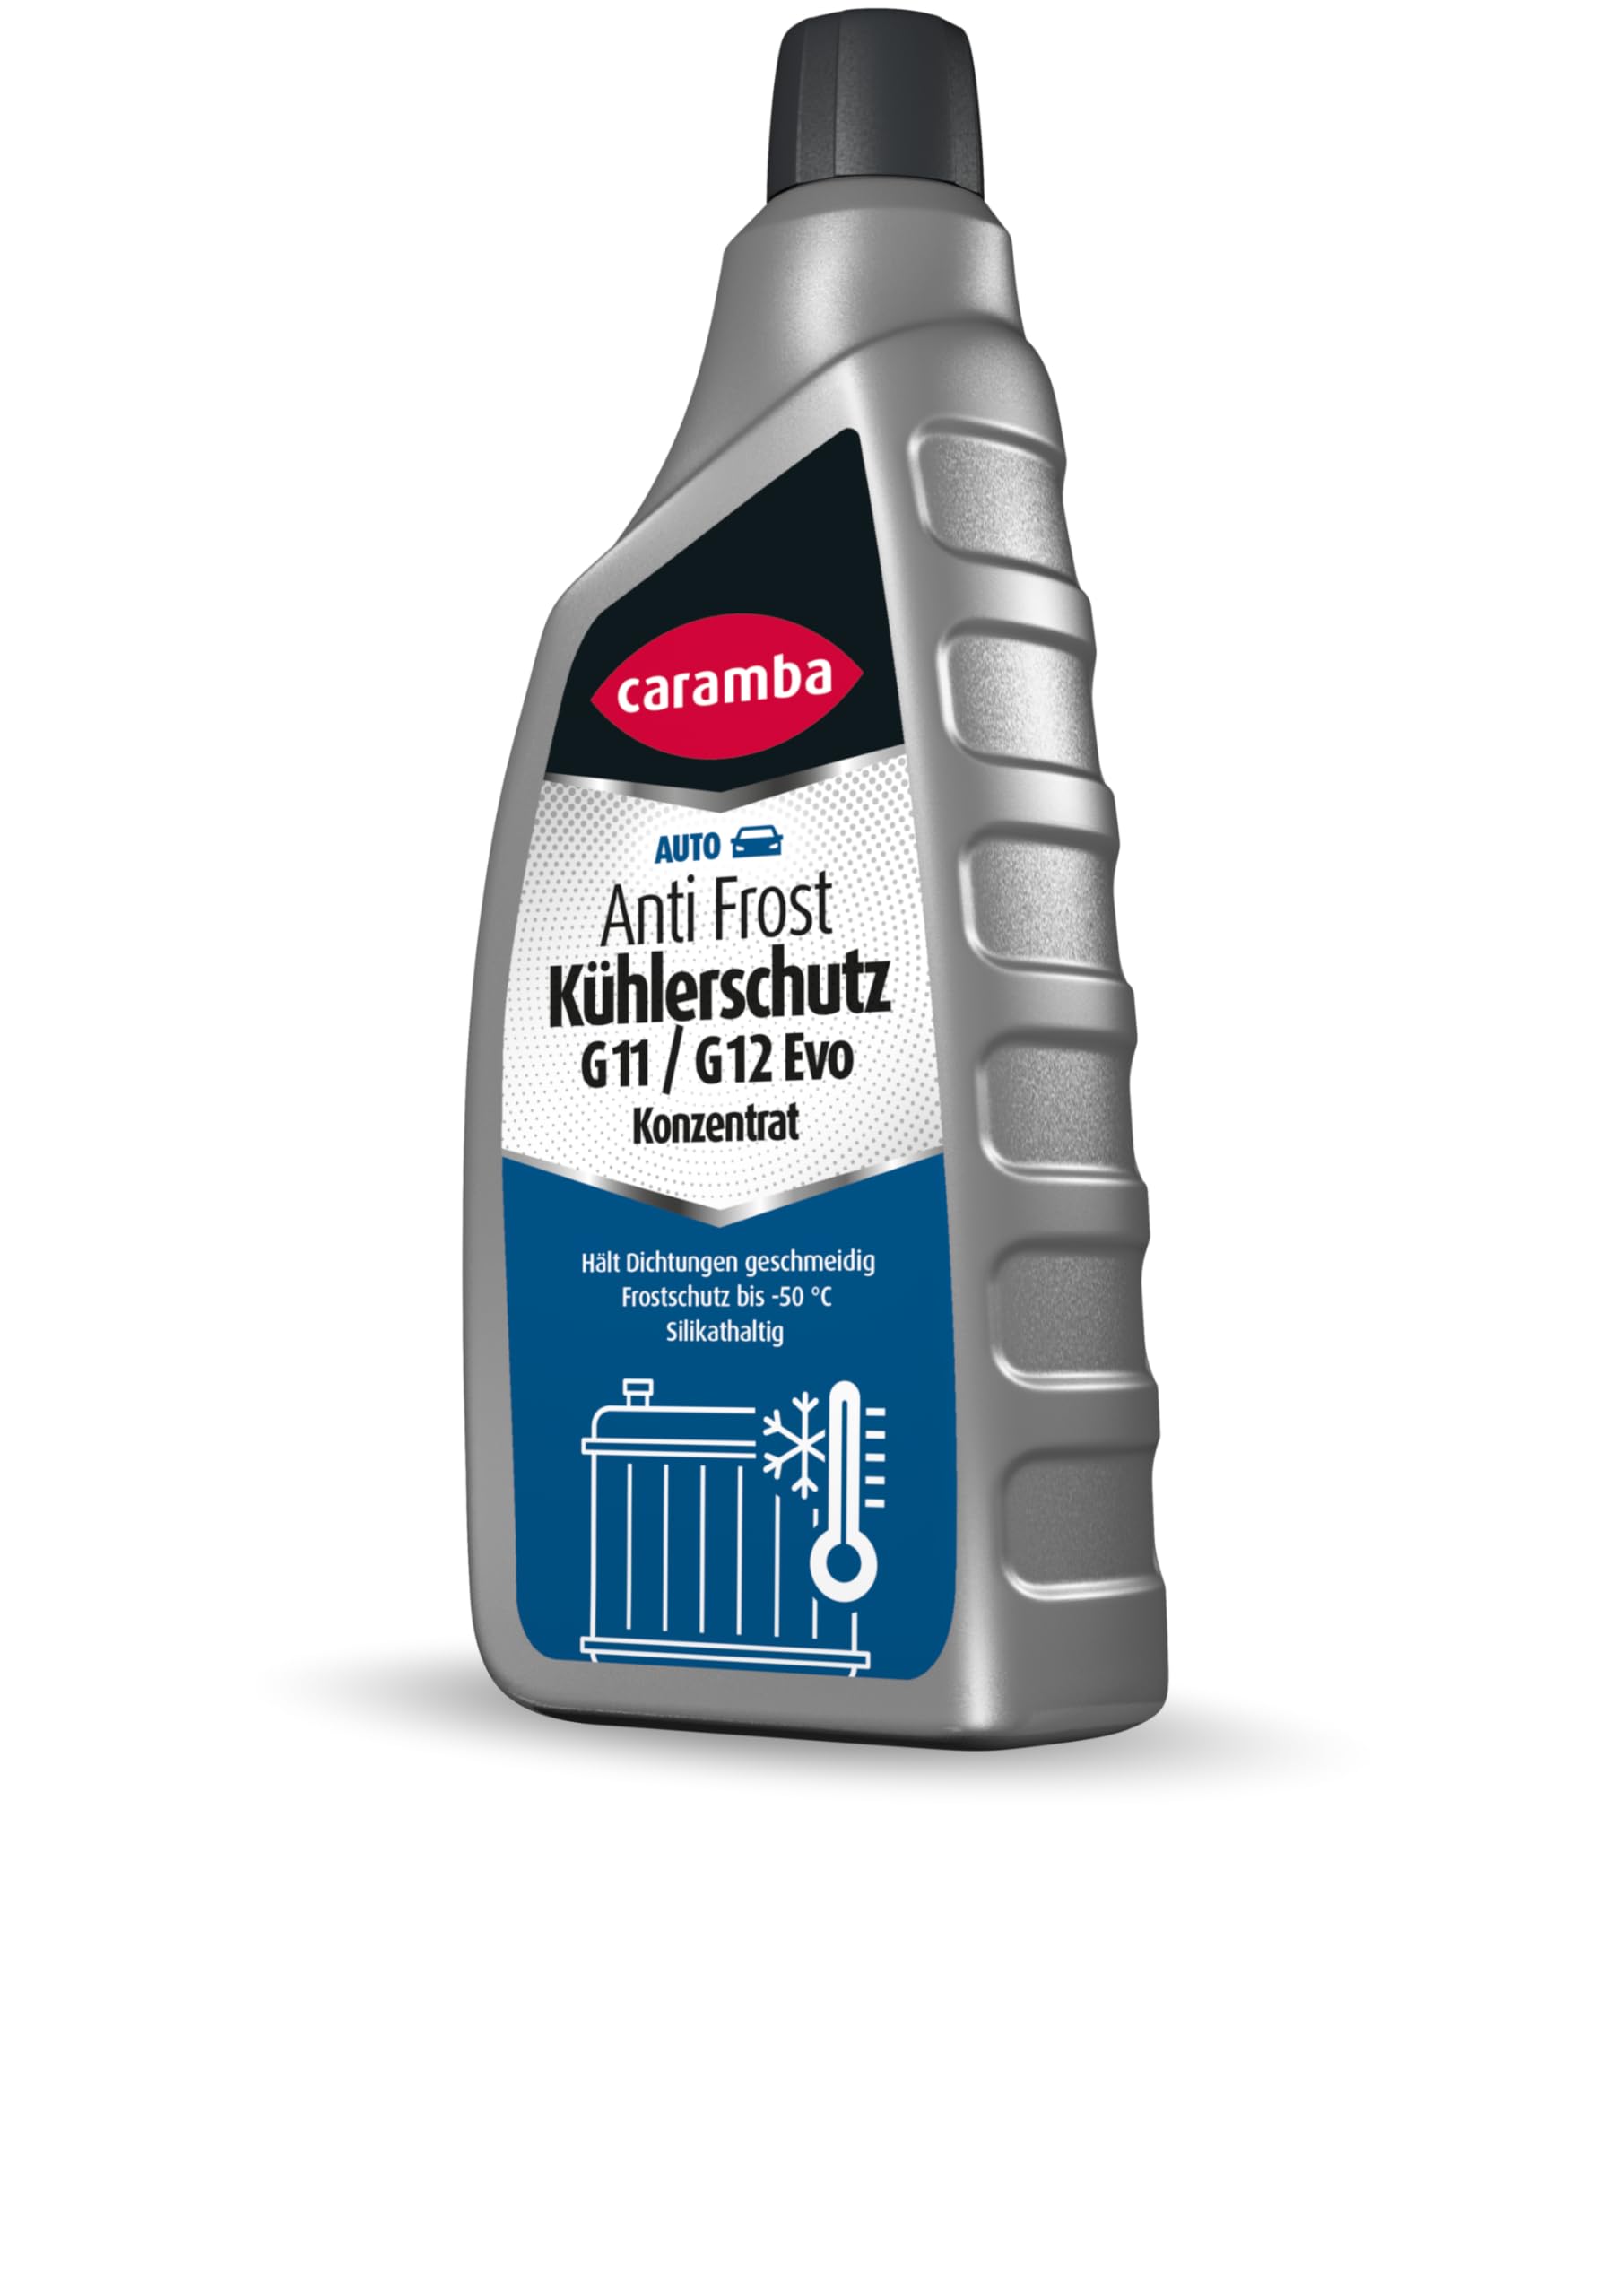 CARAMBA Anti Frost Kühlerschutz G11/G12 Evo Konzentrat silikathaltig 1l von CARAMBA